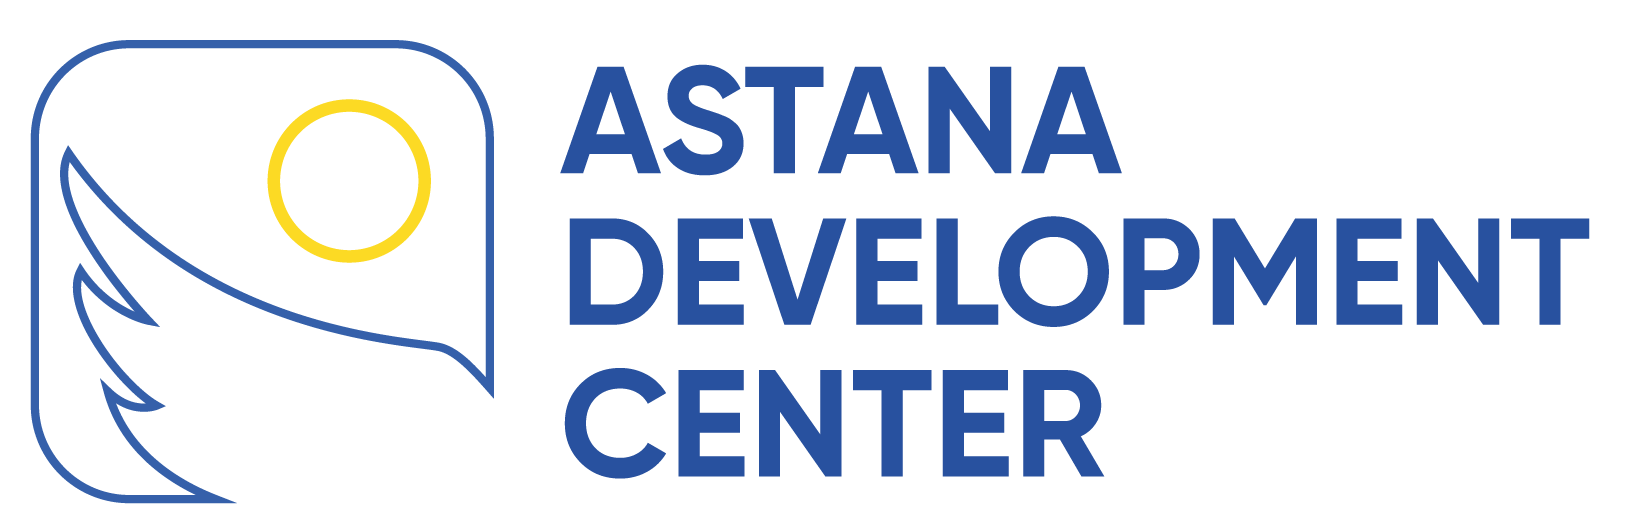 Astana Development Center